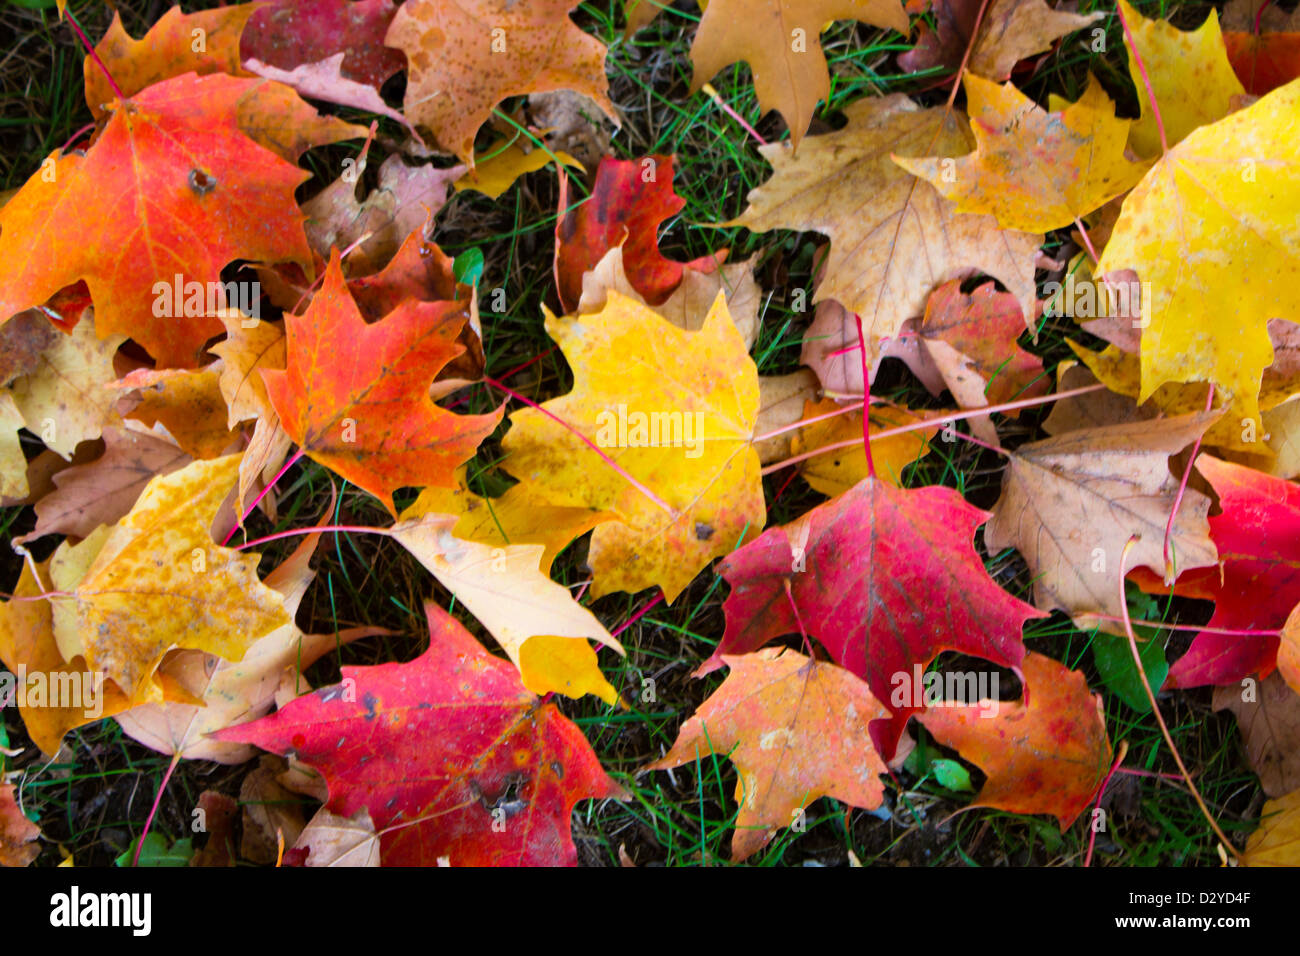 Motif de feuilles d'automne sur le terrain - abstract background Banque D'Images